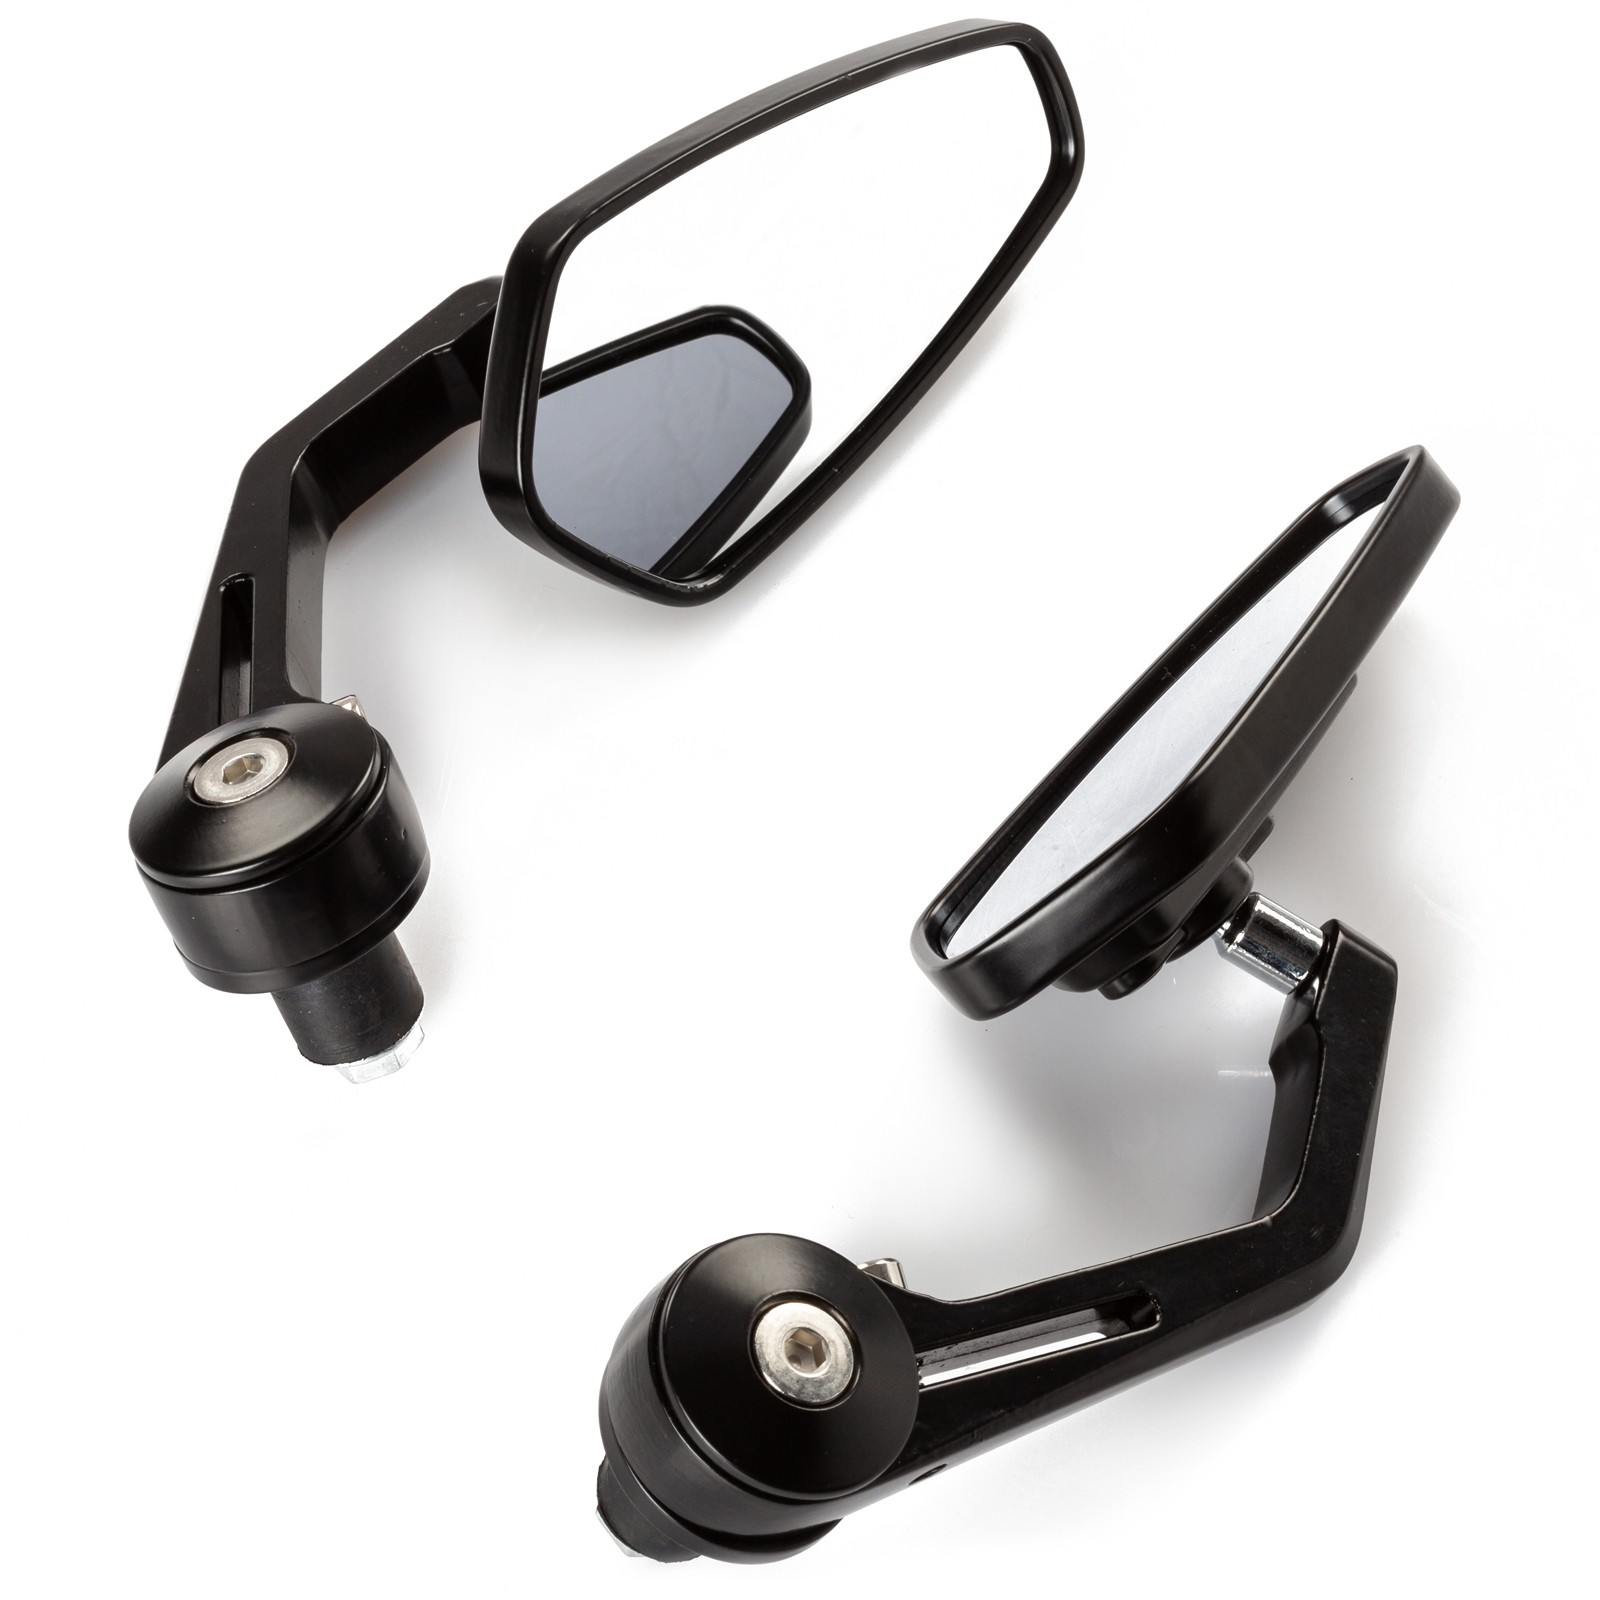 Abbigliamento Moto e Accessori - Specchietti 22mm Manubrio Moto Retrovisori  Metallo Universali Ovali Nero